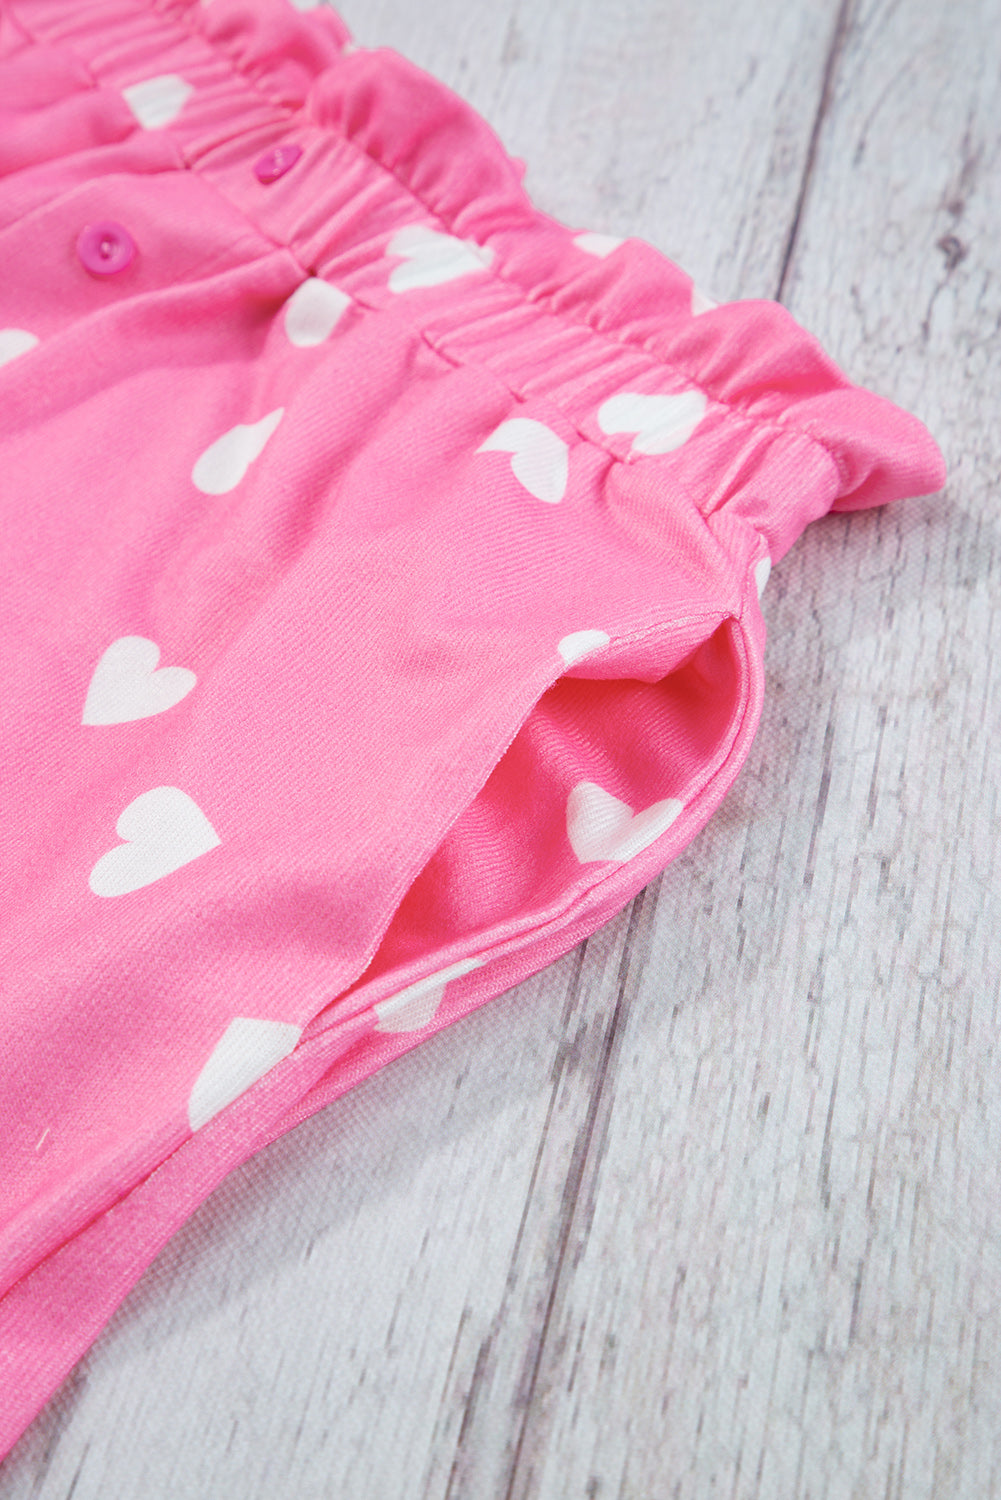 Roza majica s dugim rukavima i kratke hlače s printom srca za Valentinovo